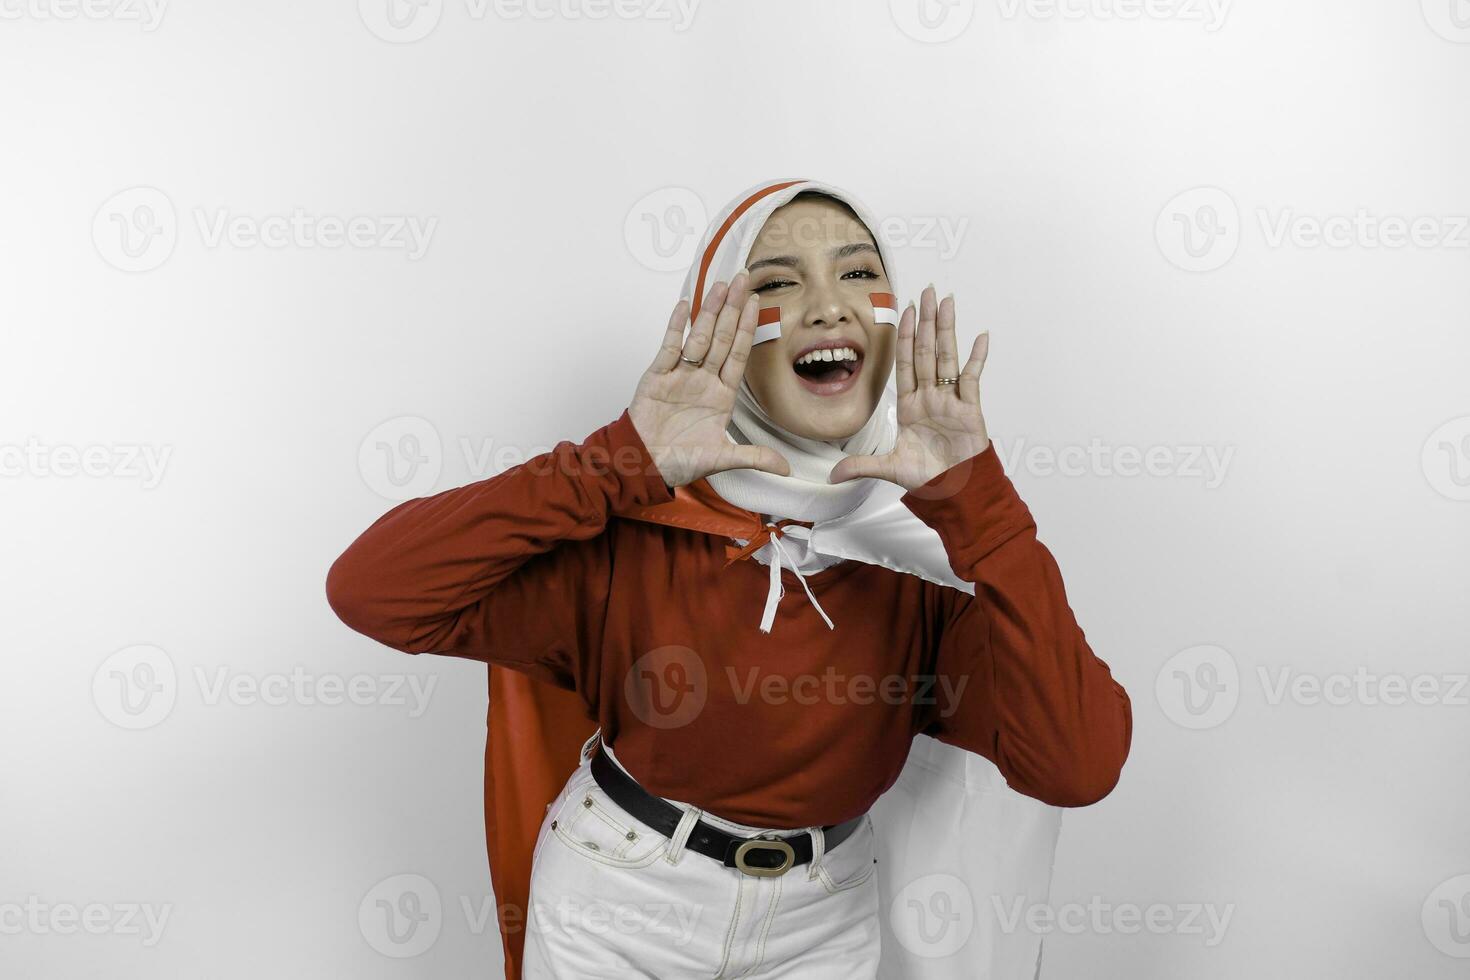 jung schön Muslim Frau tragen ein rot oben und Weiß Hijab ist halten Indonesiens Flagge und schreien und schreiend laut mit ein Hand auf ihr Mund. Indonesiens Unabhängigkeit Tag Konzept. foto